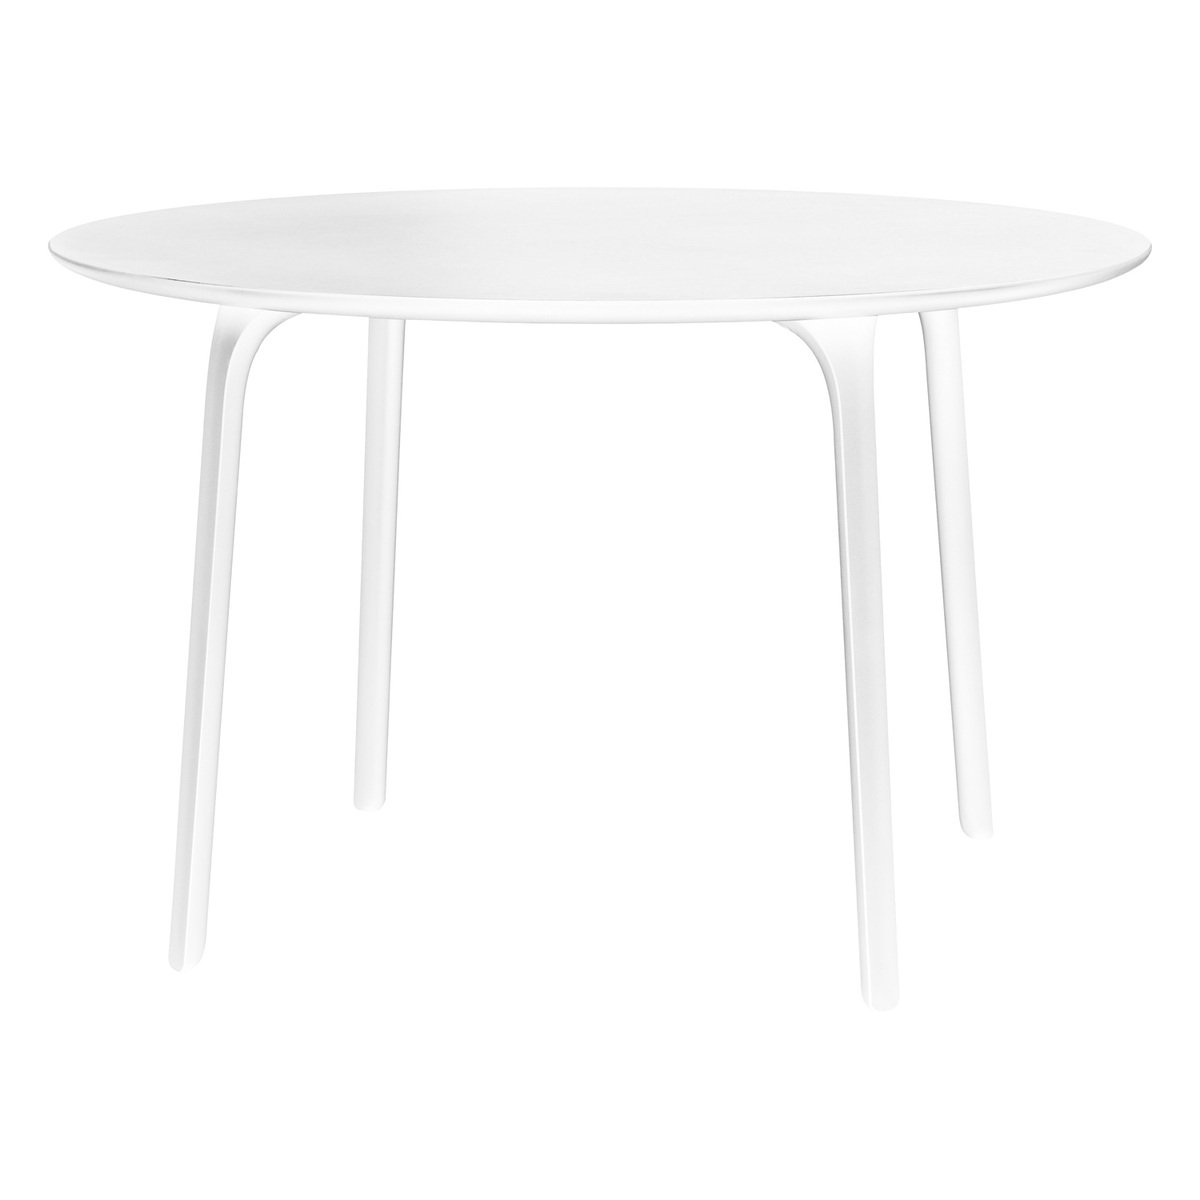 Magis First pöytä, pyöreä, 120 cm, valkoinen